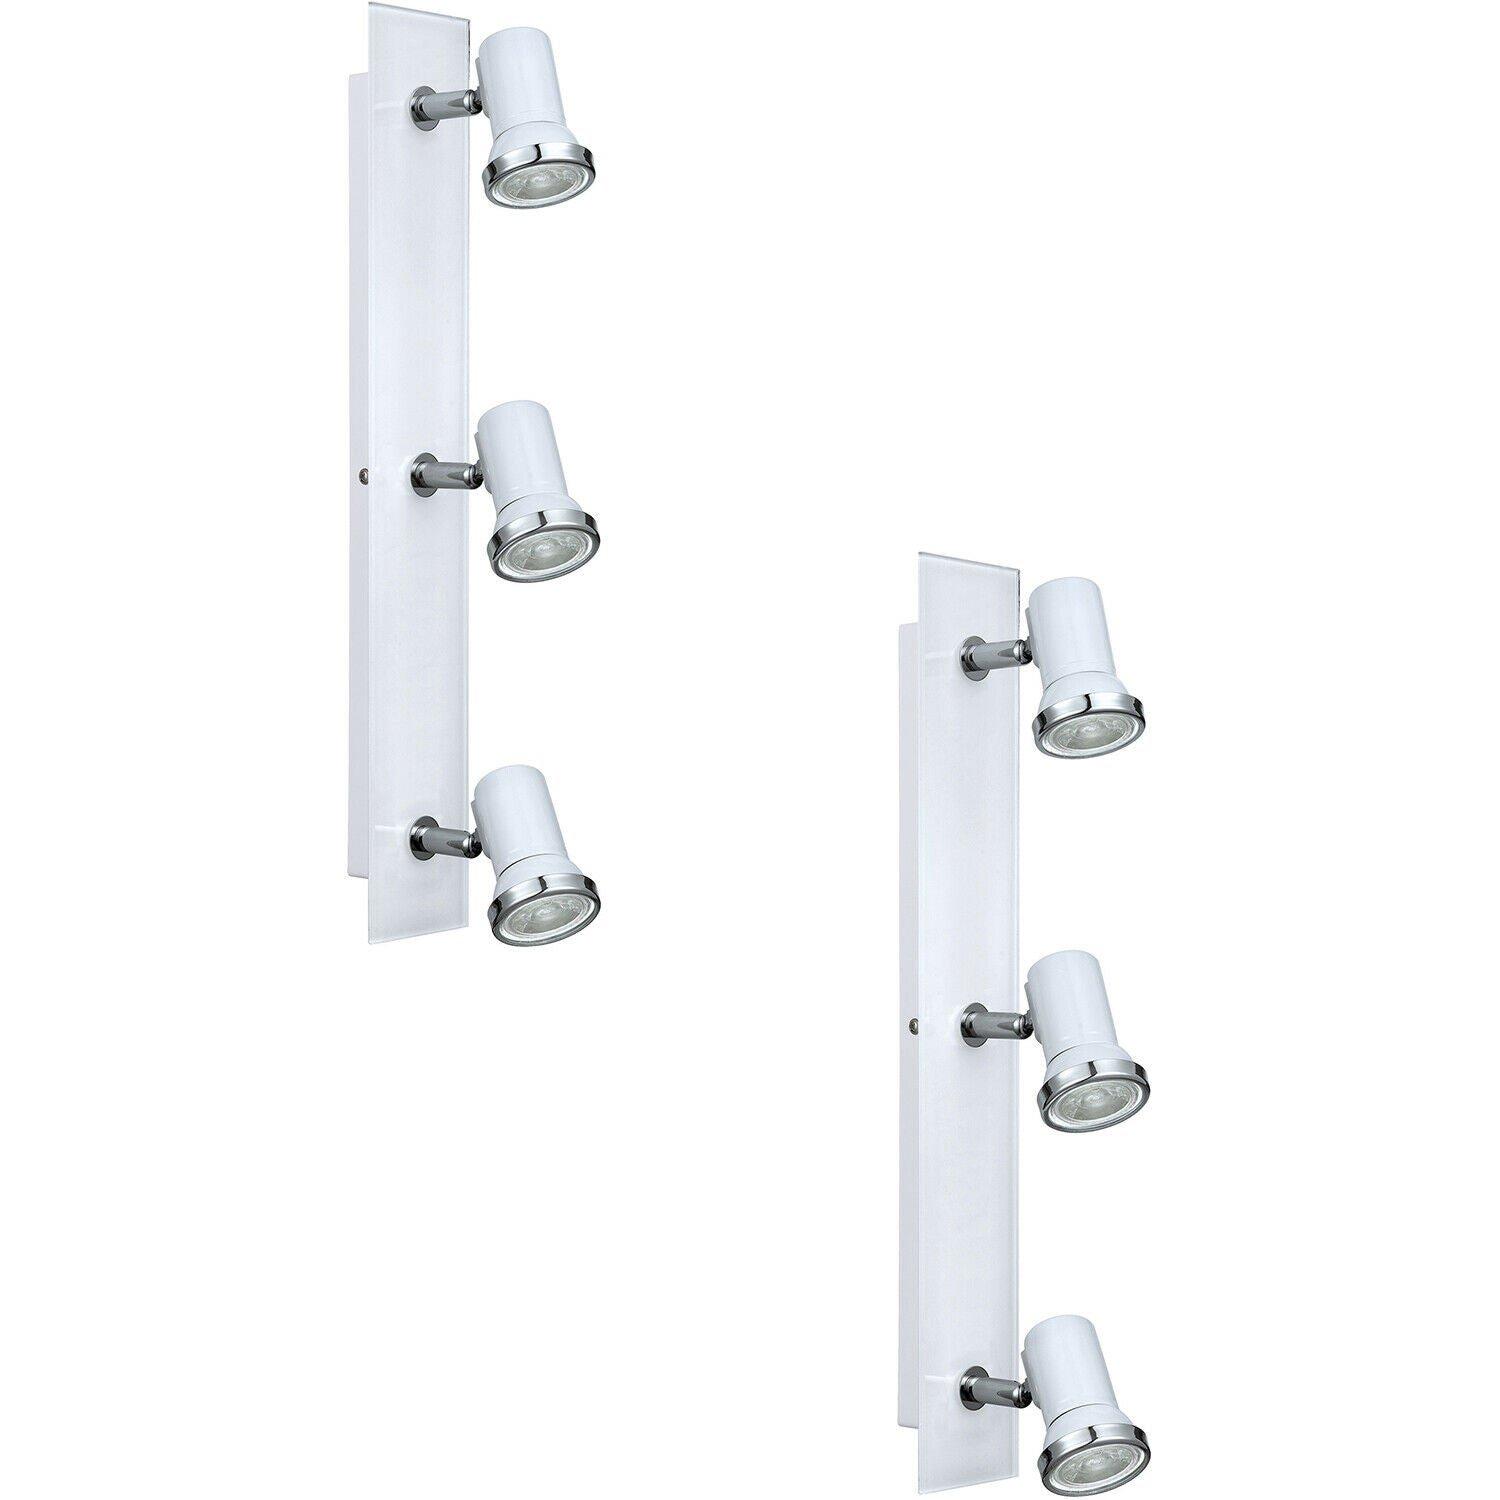 2 PACK Wall Flush Ceiling Light IP44 Bathroom Colour White Chrome GU10 3x3.3W